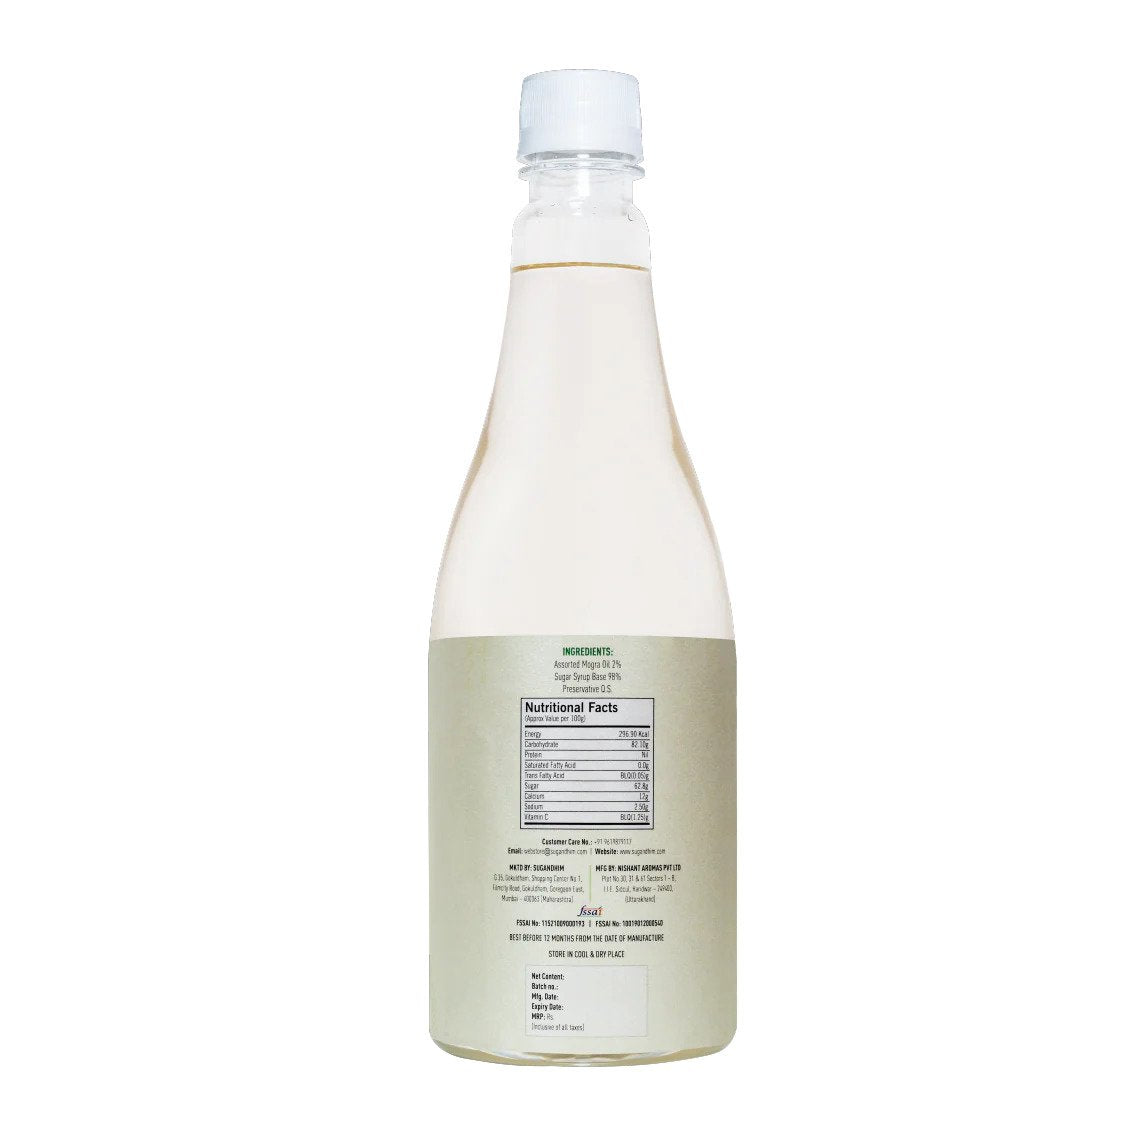 Mogra Syrup - 750 ml